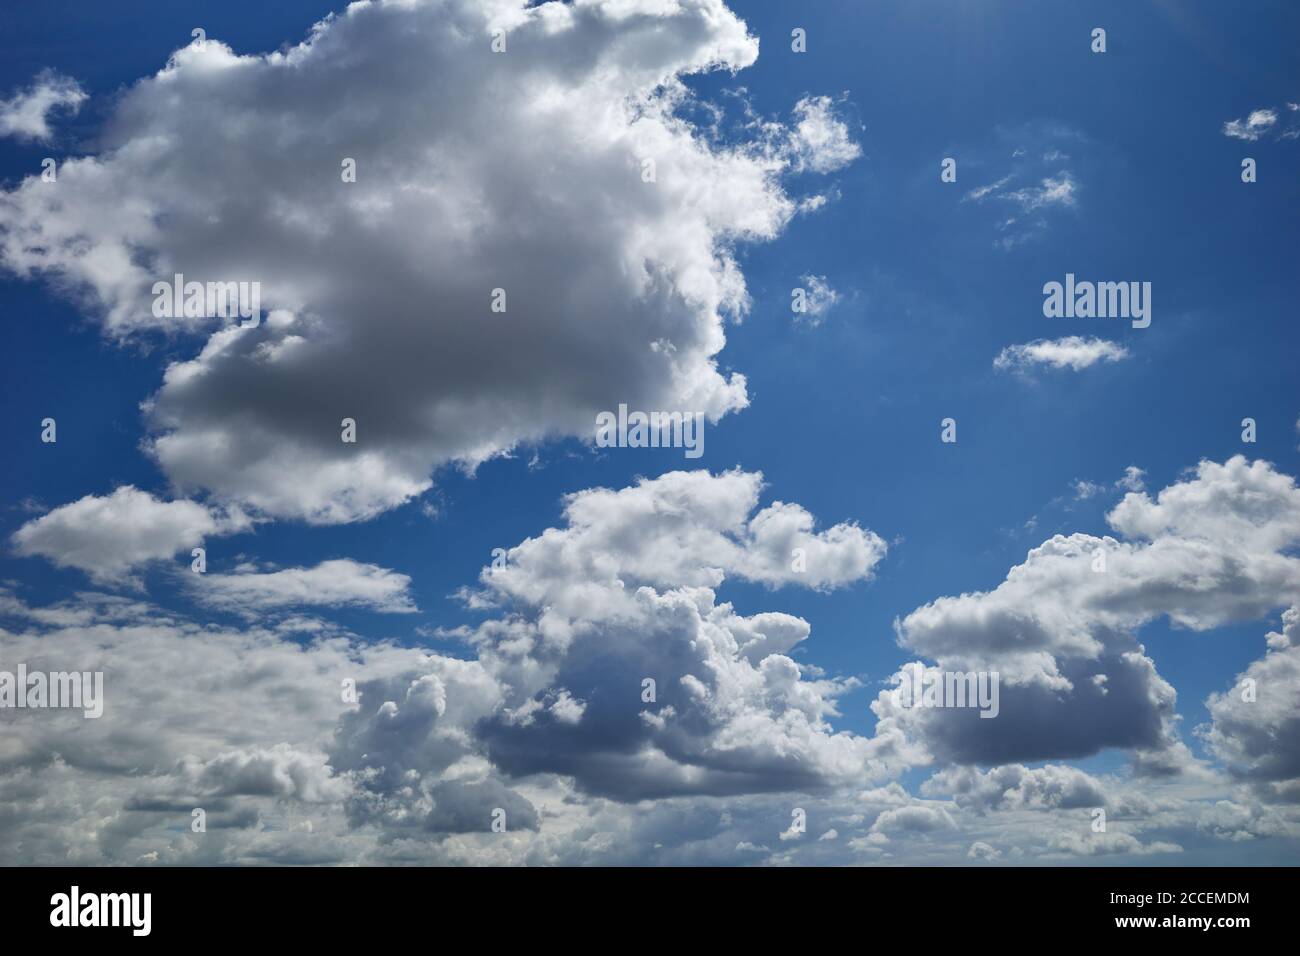 Traumhafter Himmel. Erstaunliche Wolken fliegen am blauen Himmel. Flauschige, geschwollene, baumwollartige Wolken. Hintergrund für Vorhersage und Meteorologie Illustration Stockfoto